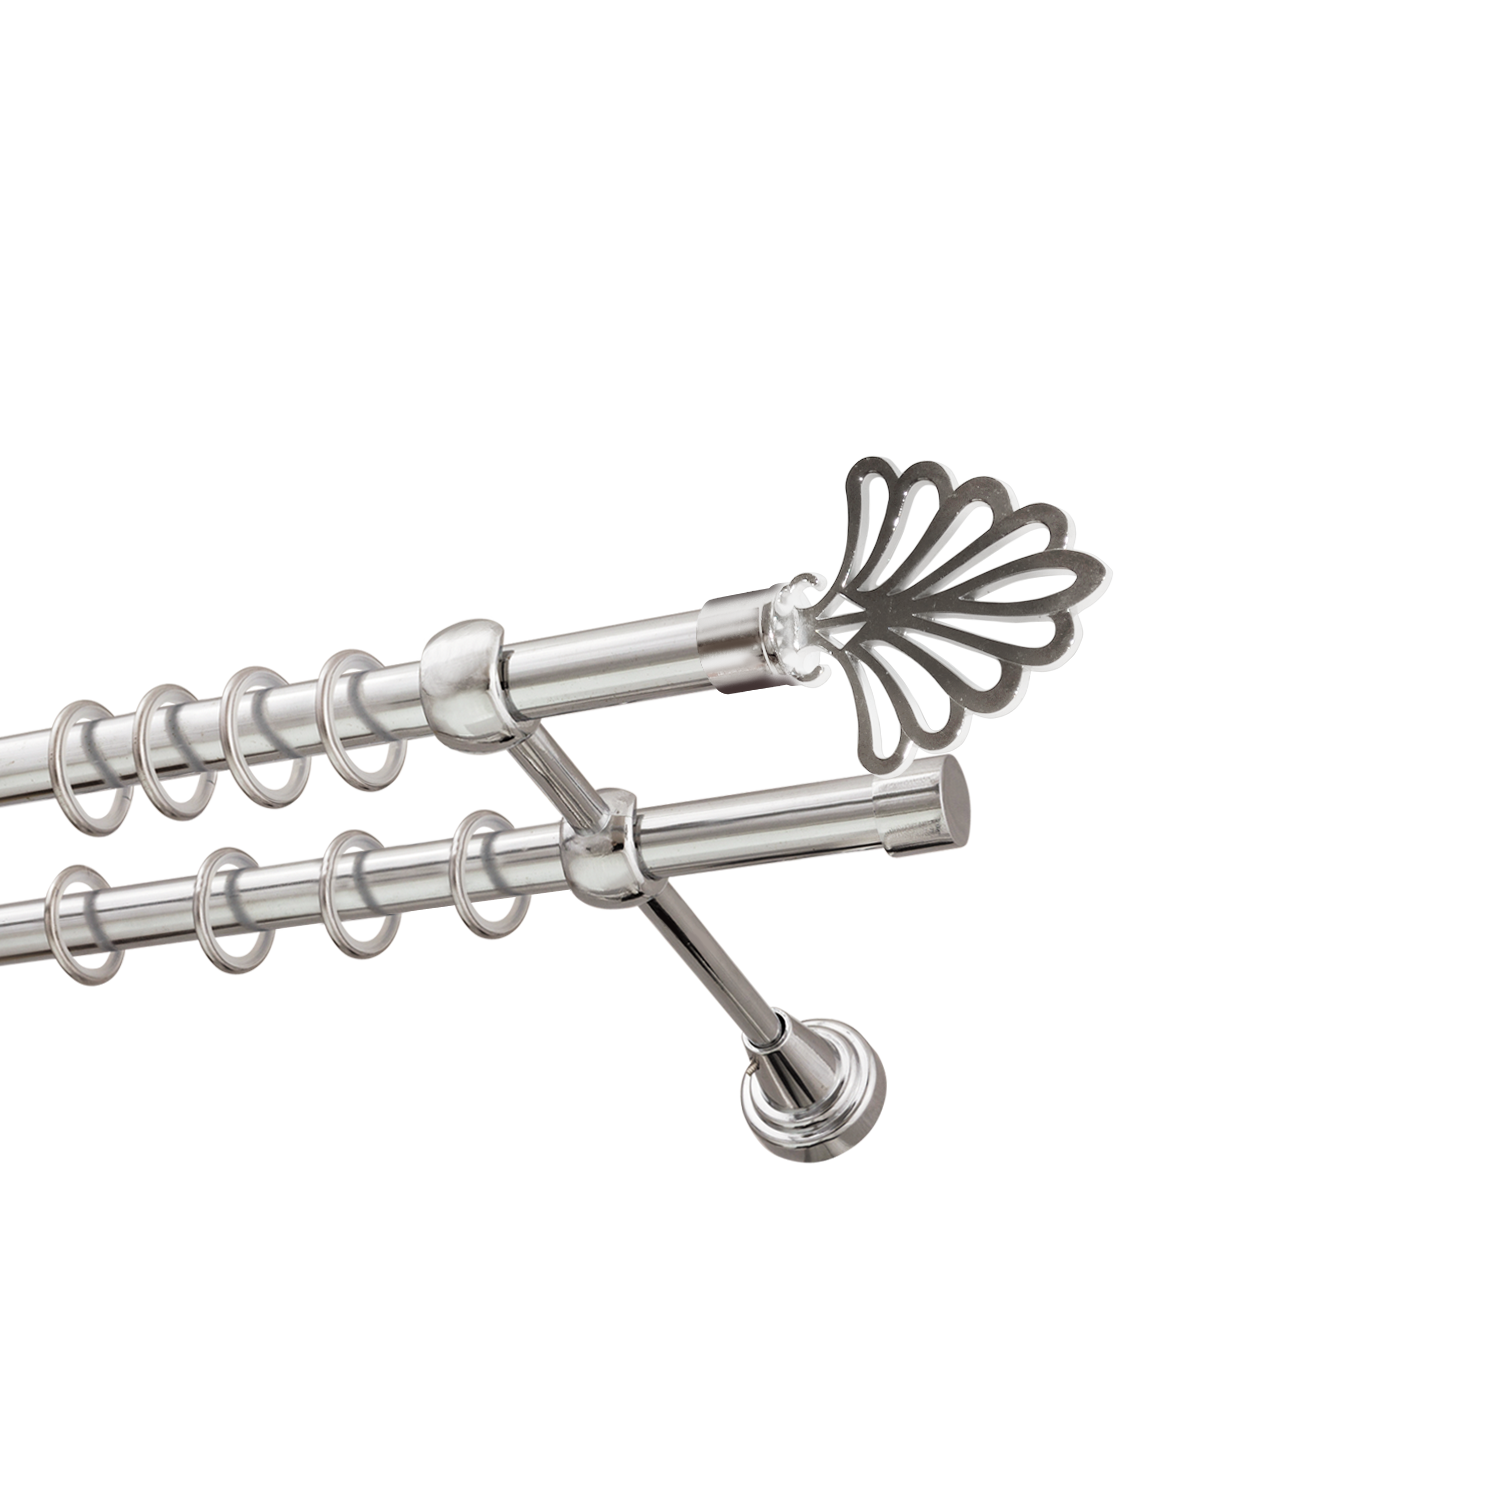 Металлический карниз для штор Бутик, двухрядный 16/16 мм, серебро, гладкая штанга, длина 140 см - фото Wikidecor.ru